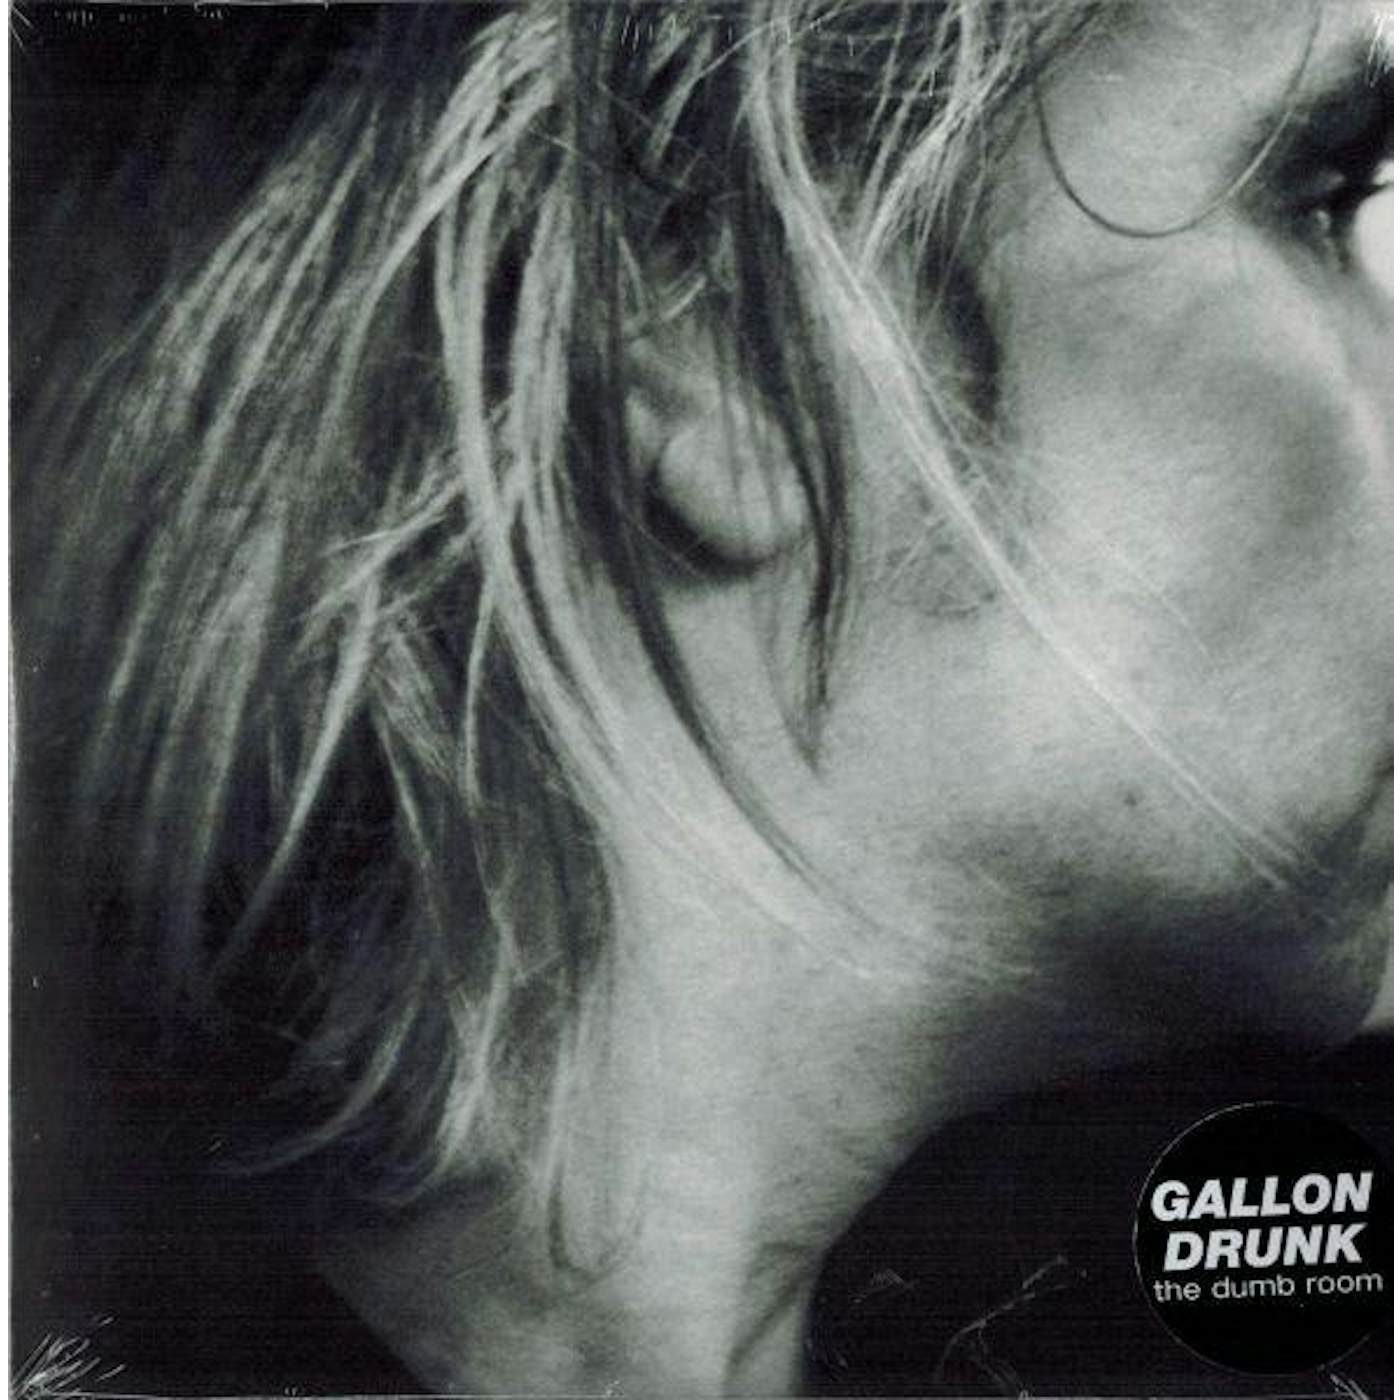 Gallon Drunk Dumb Room Vinyl Record